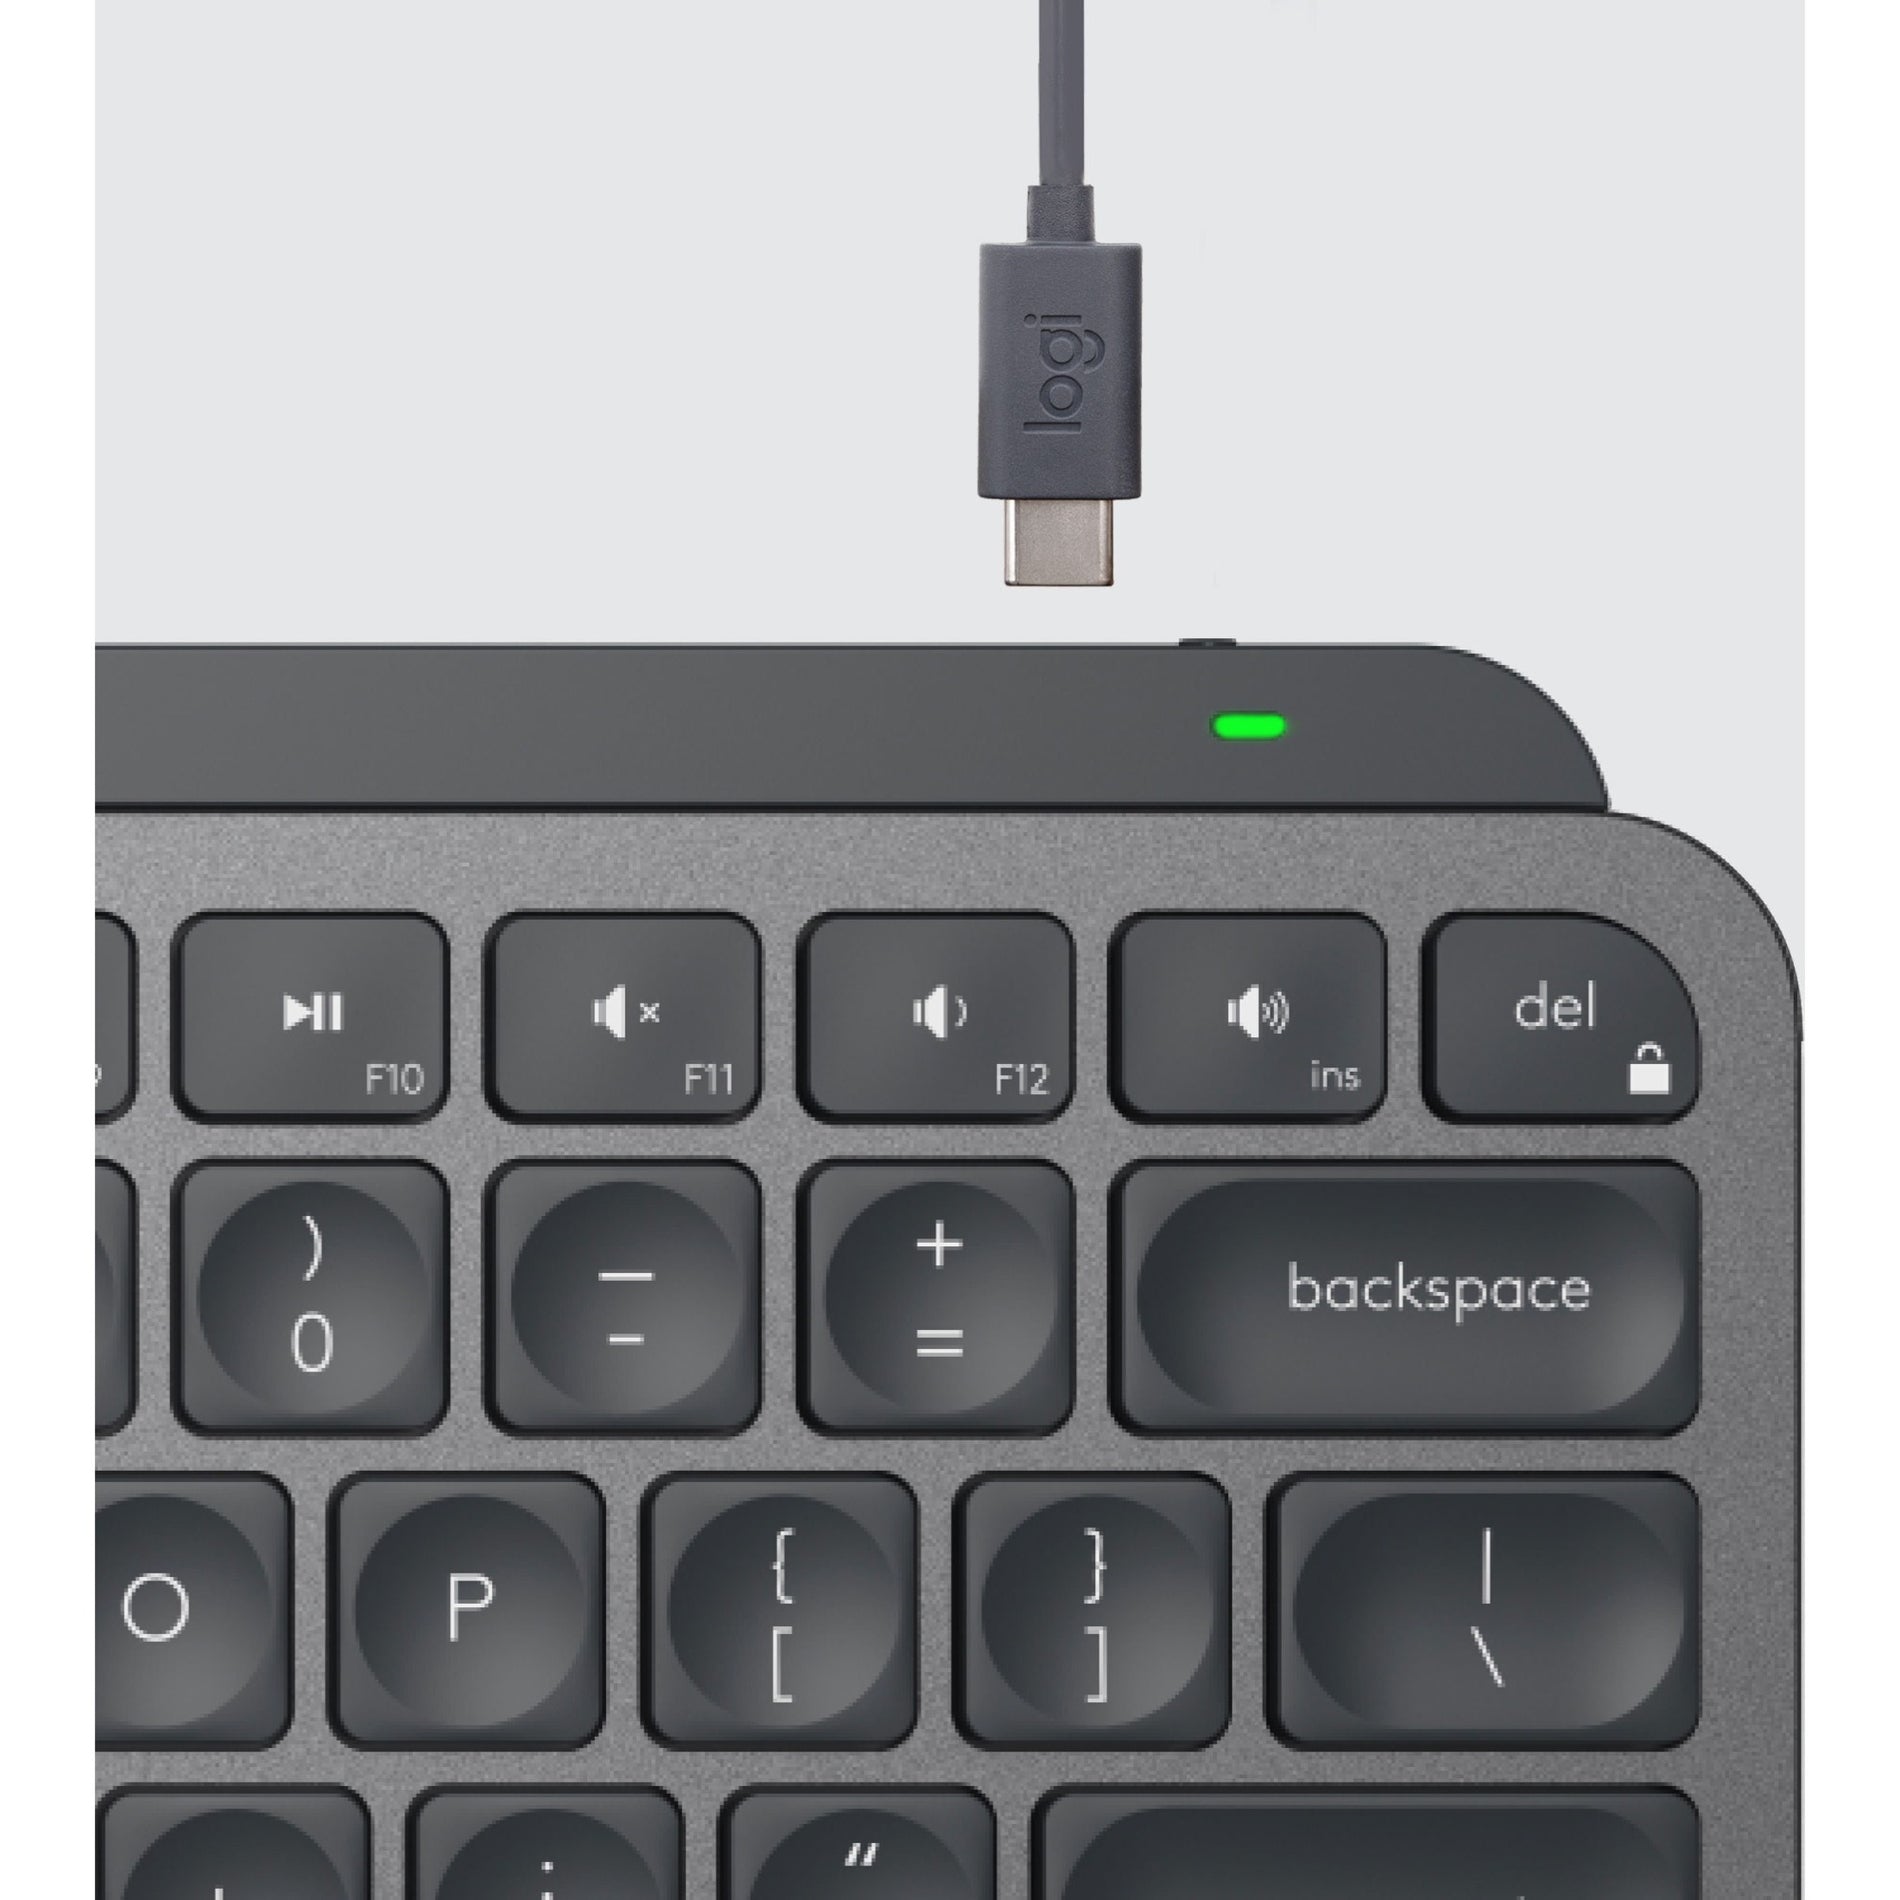 Logitech MX Keys Mini Wireless Keyboard & Logi Bolt USB Receiver